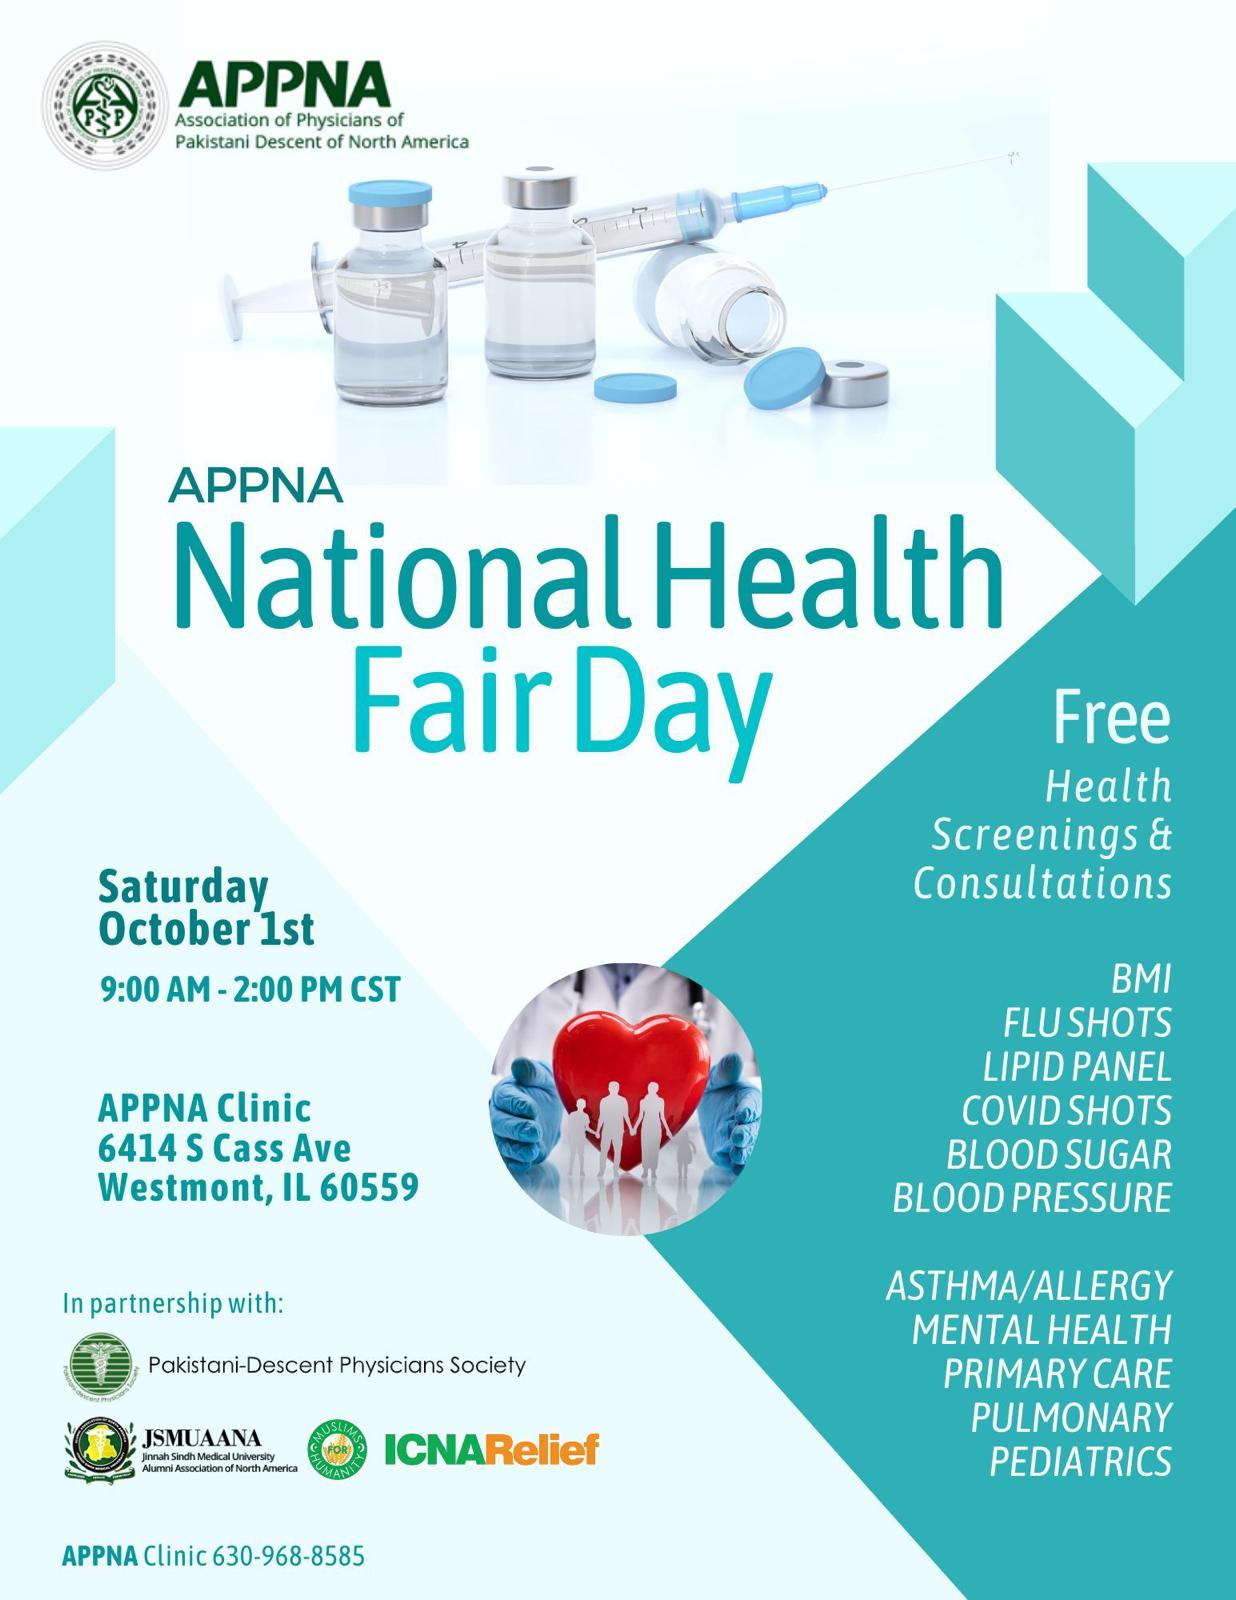 APPNA National Health Fair Day